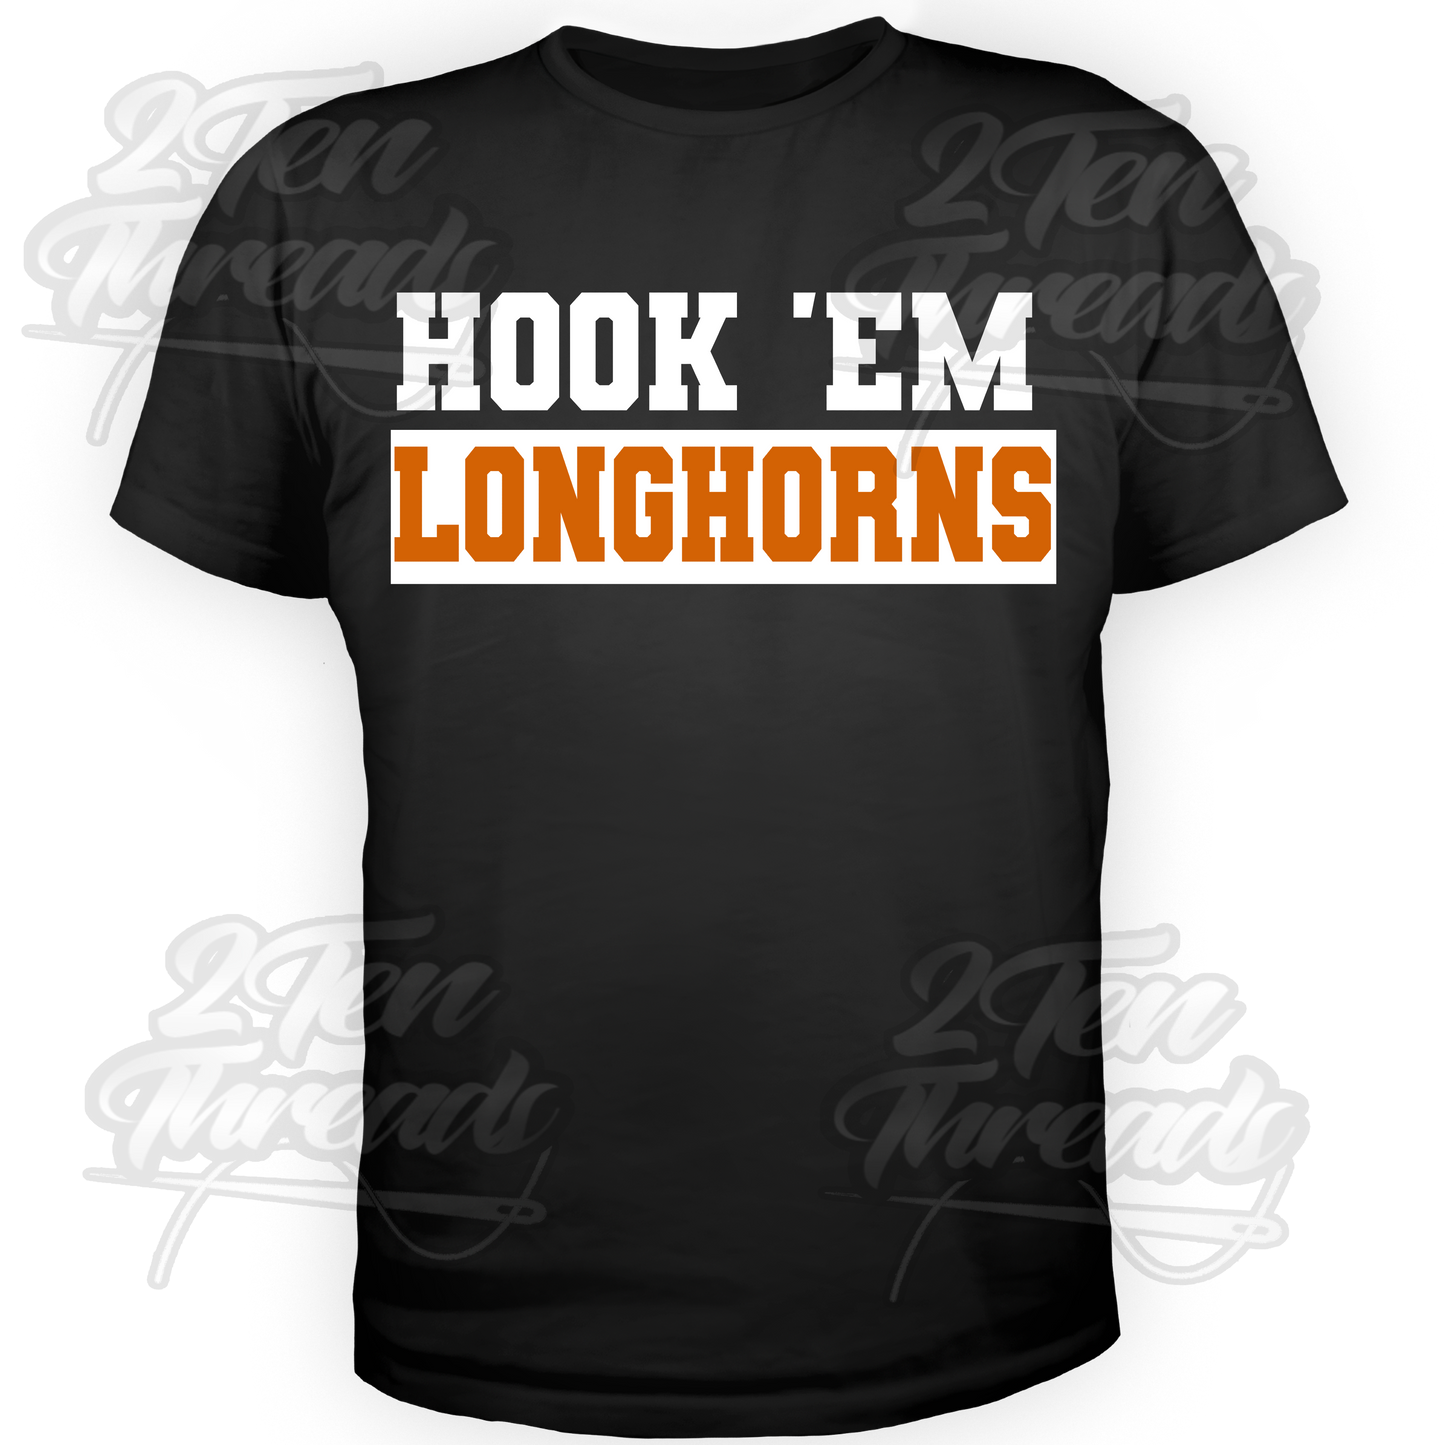 The Longhorn Hook Shirt